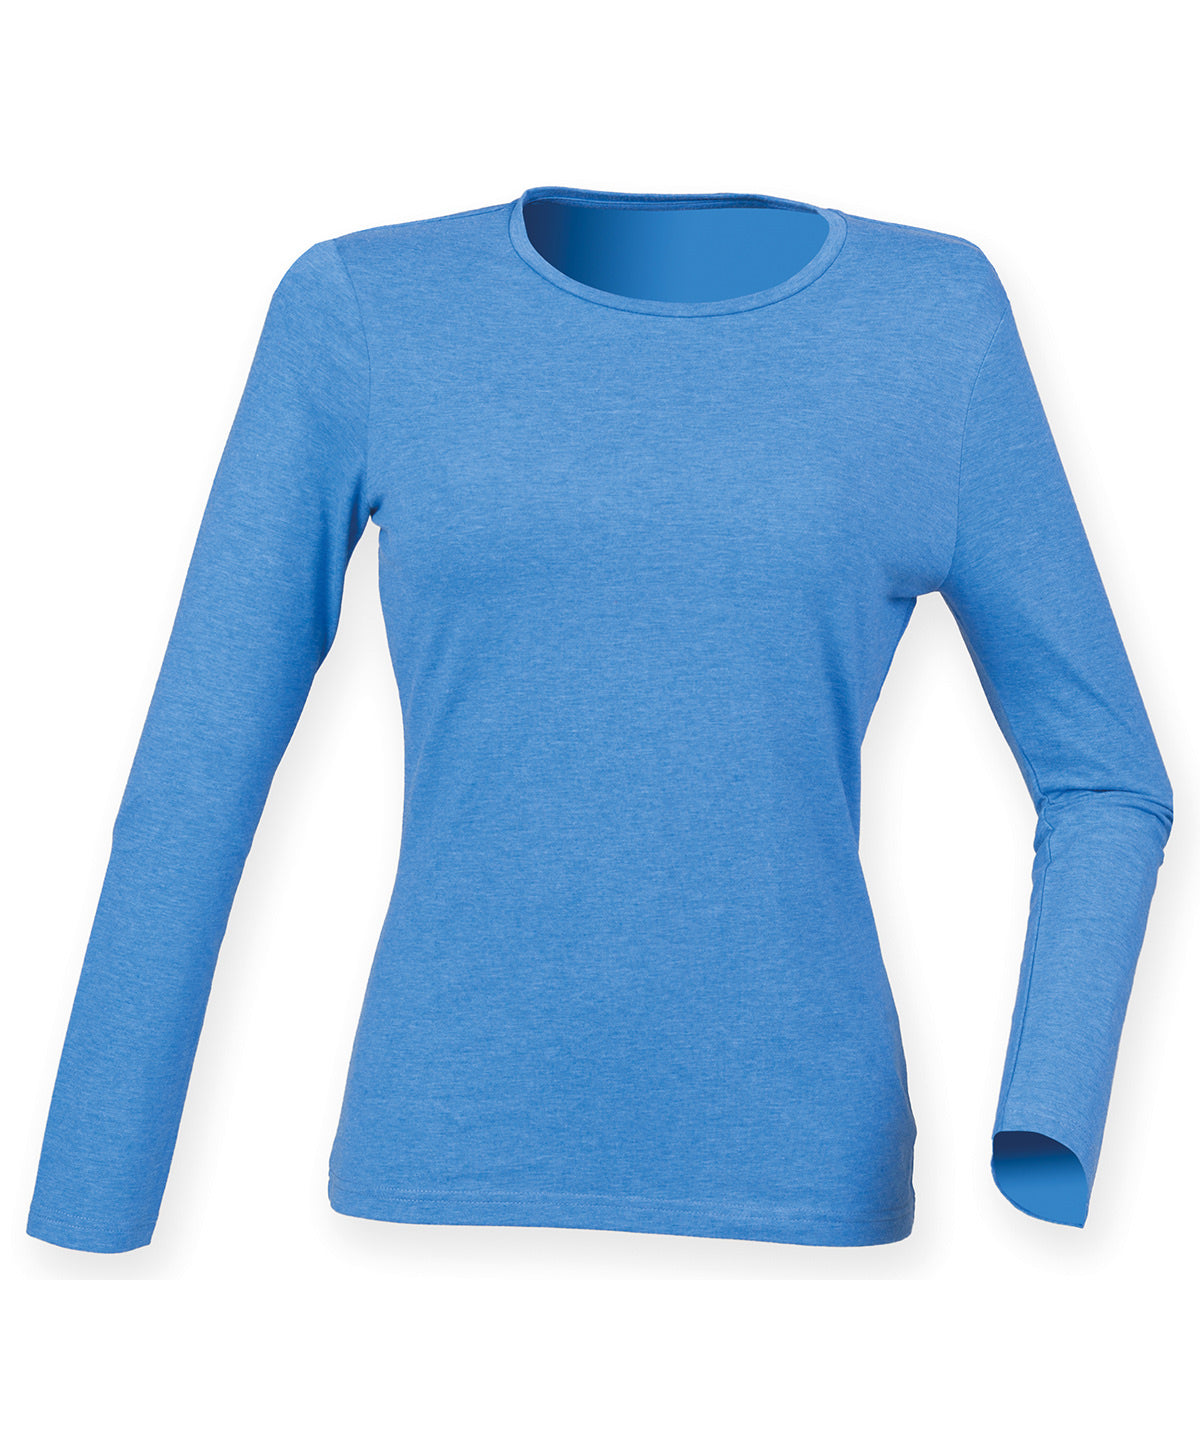 Stuttermabolir - Women's Feel Good Long Sleeved Stretch T-shirt